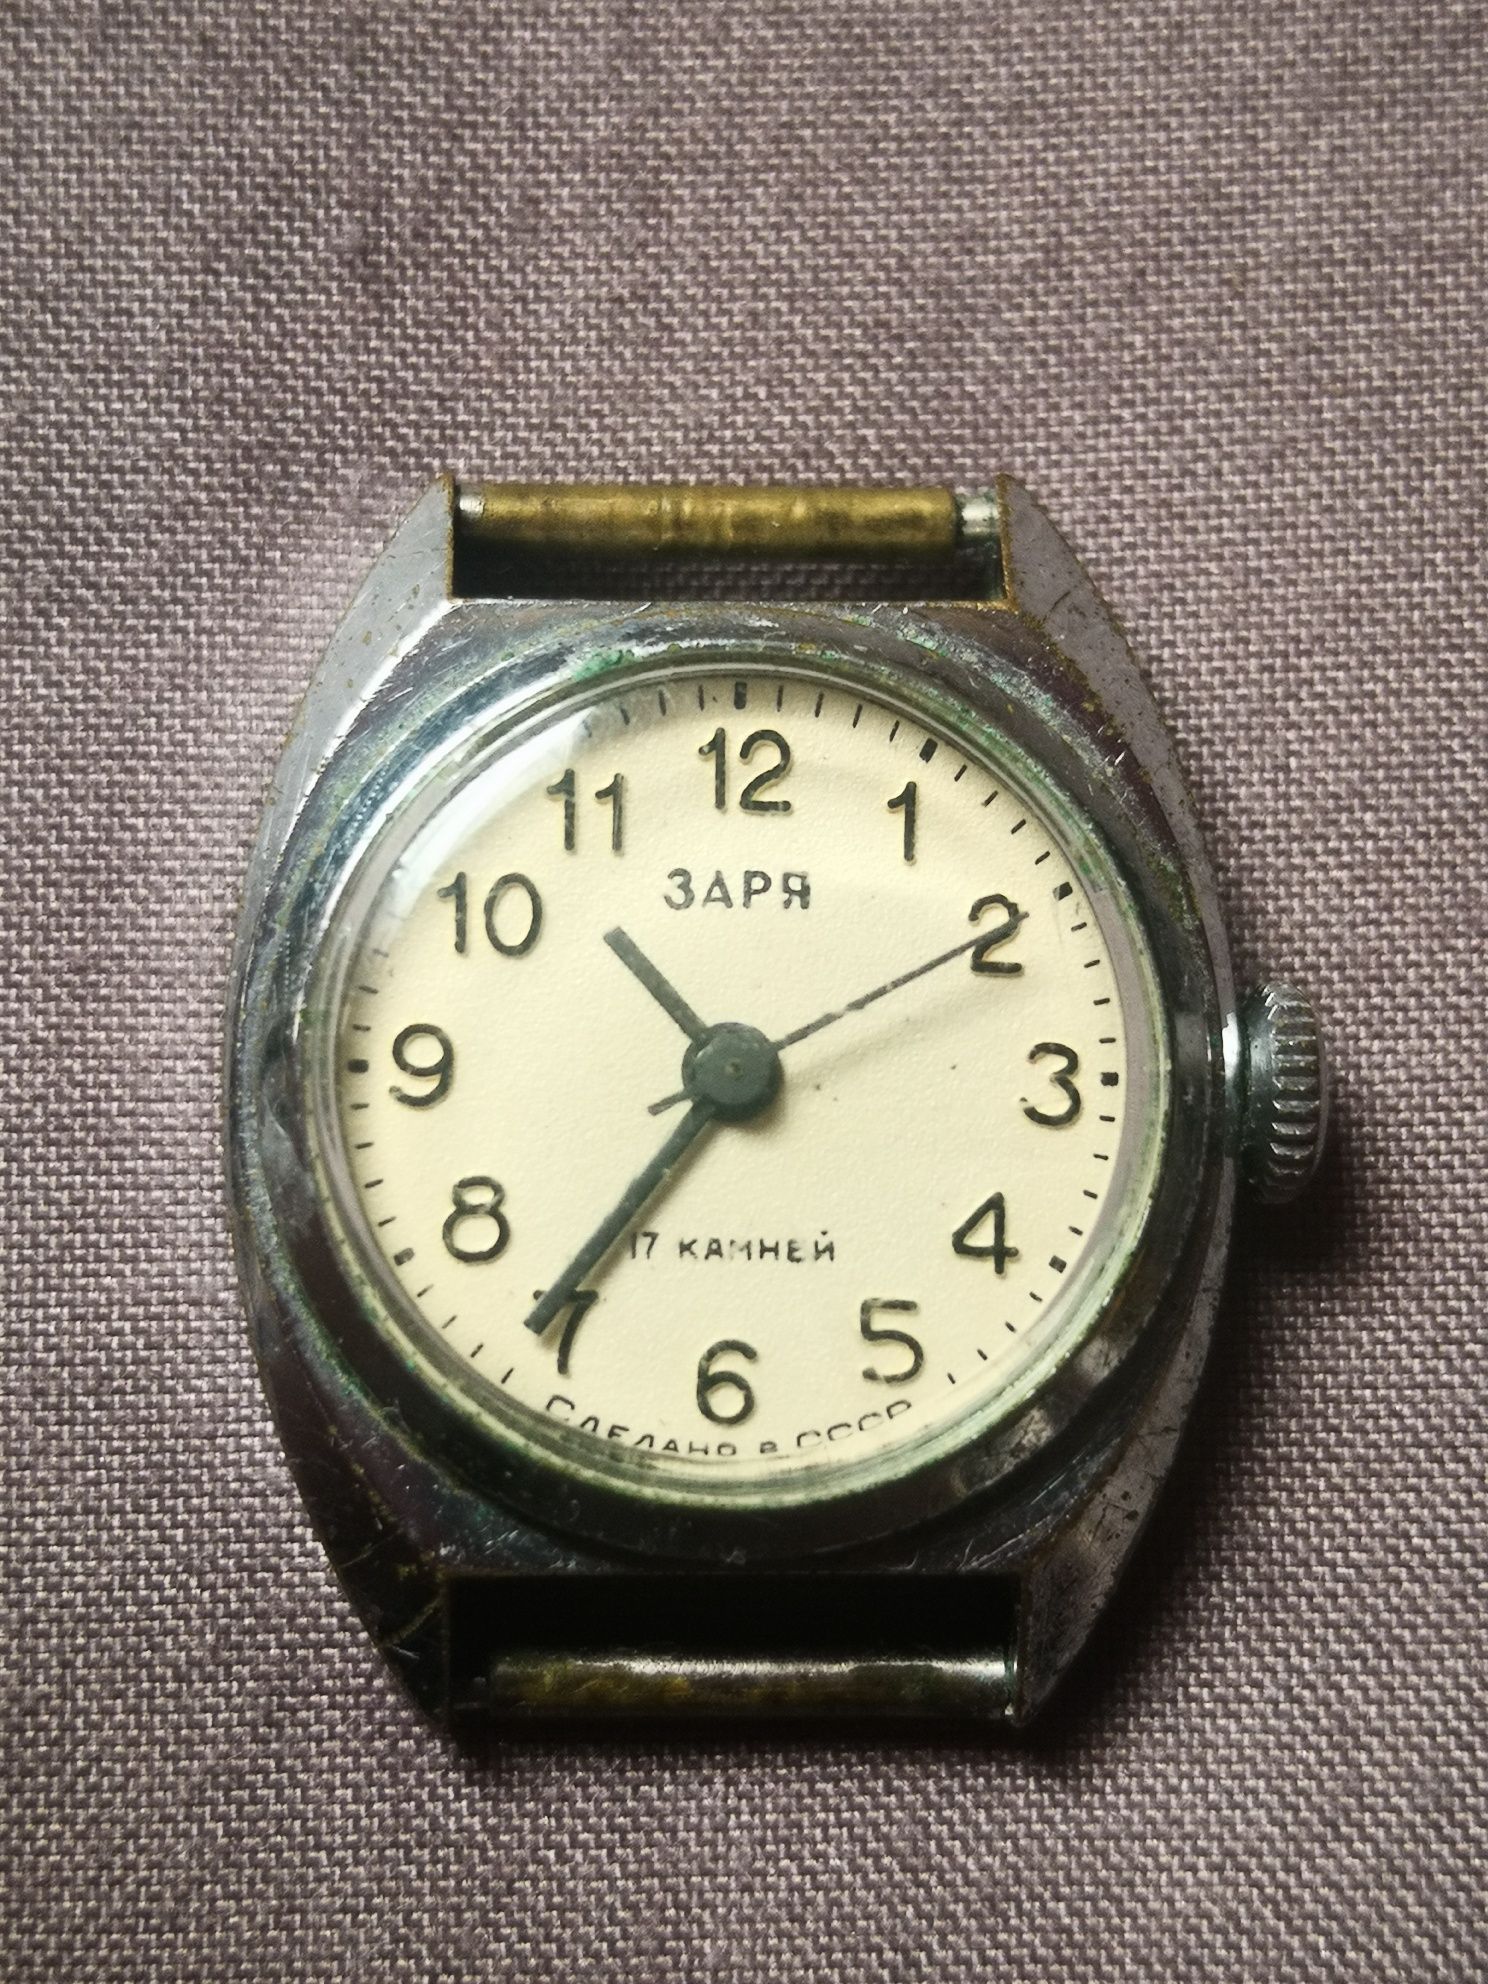 Zegarek damski 3APR. Odzysk części, starocie PRL